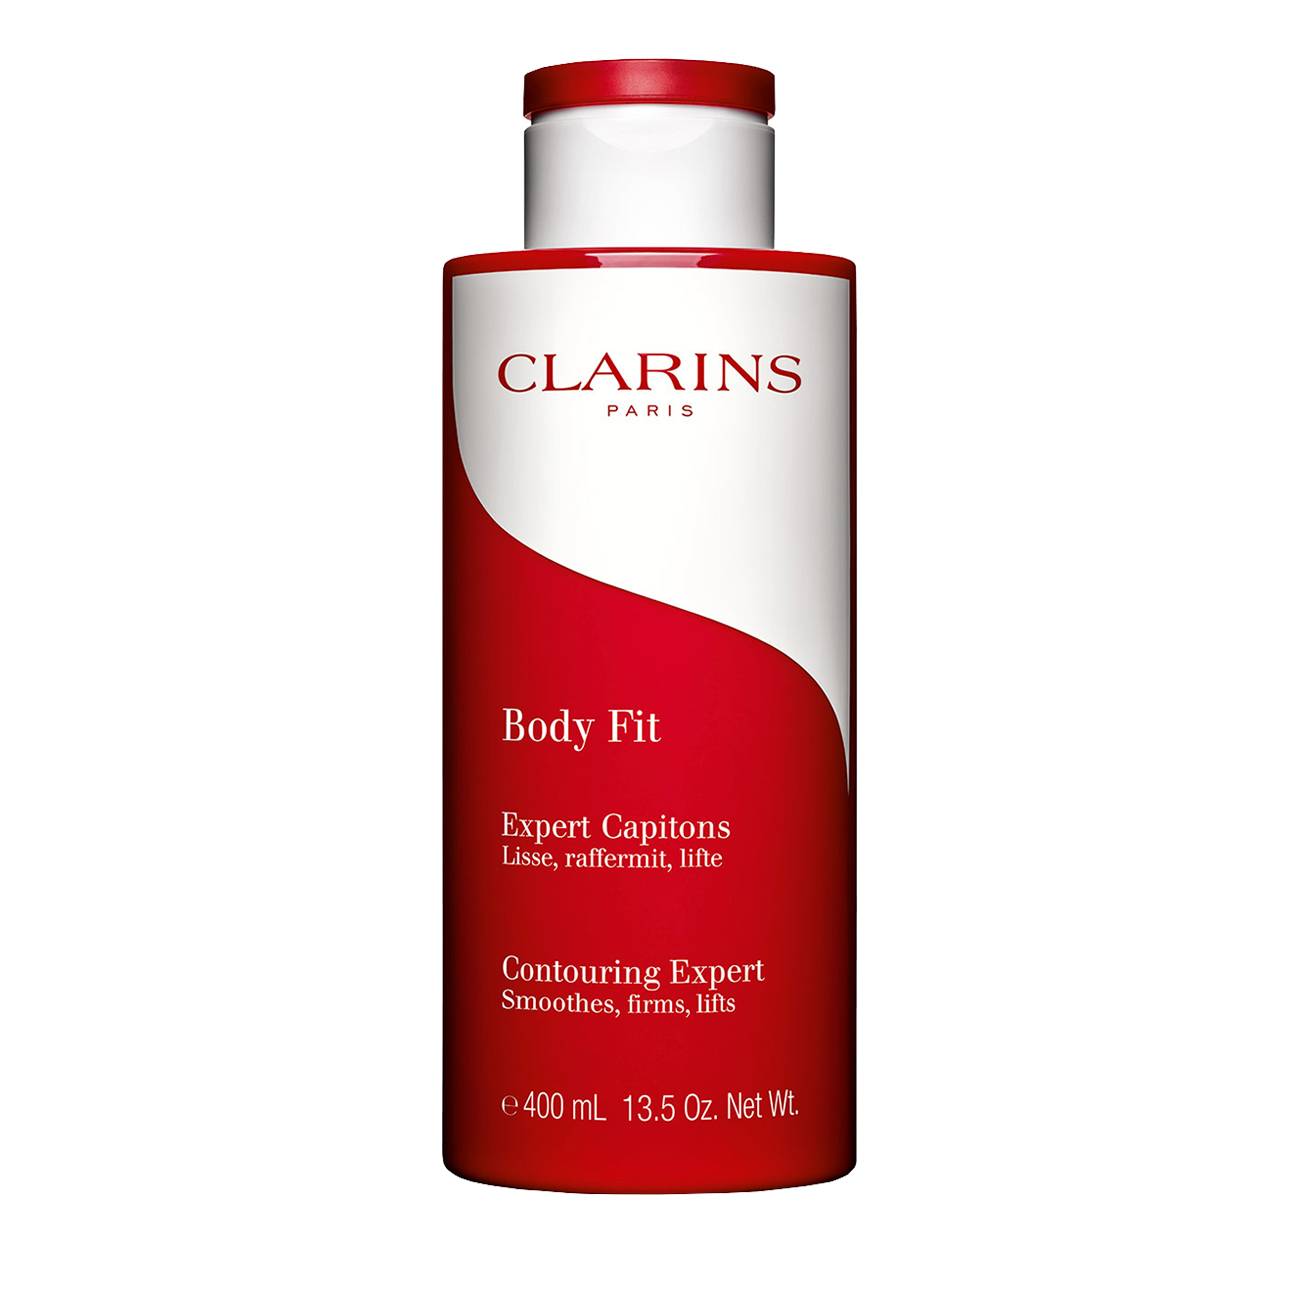 Body Fit Anti-Cellulite Contouring Expert 400 ml original Clarins bestvalue